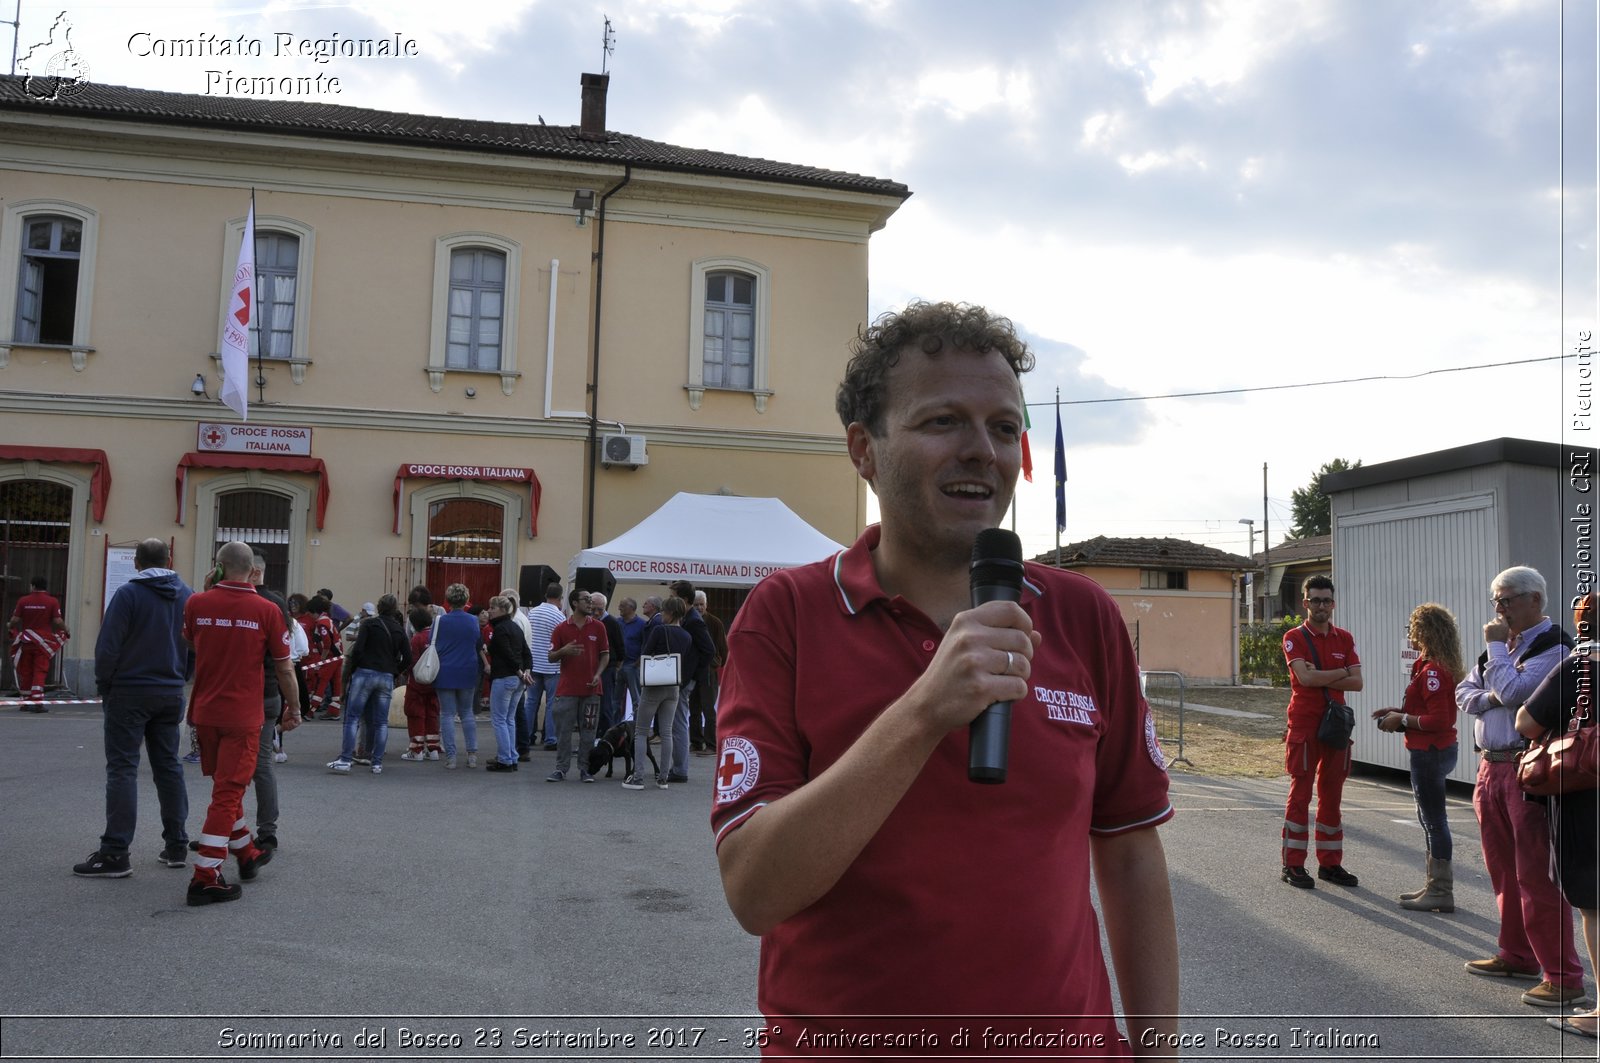 Sommariva del Bosco 23 Settembre 2017 - 35 Anniversario di fondazione - Croce Rossa Italiana- Comitato Regionale del Piemonte